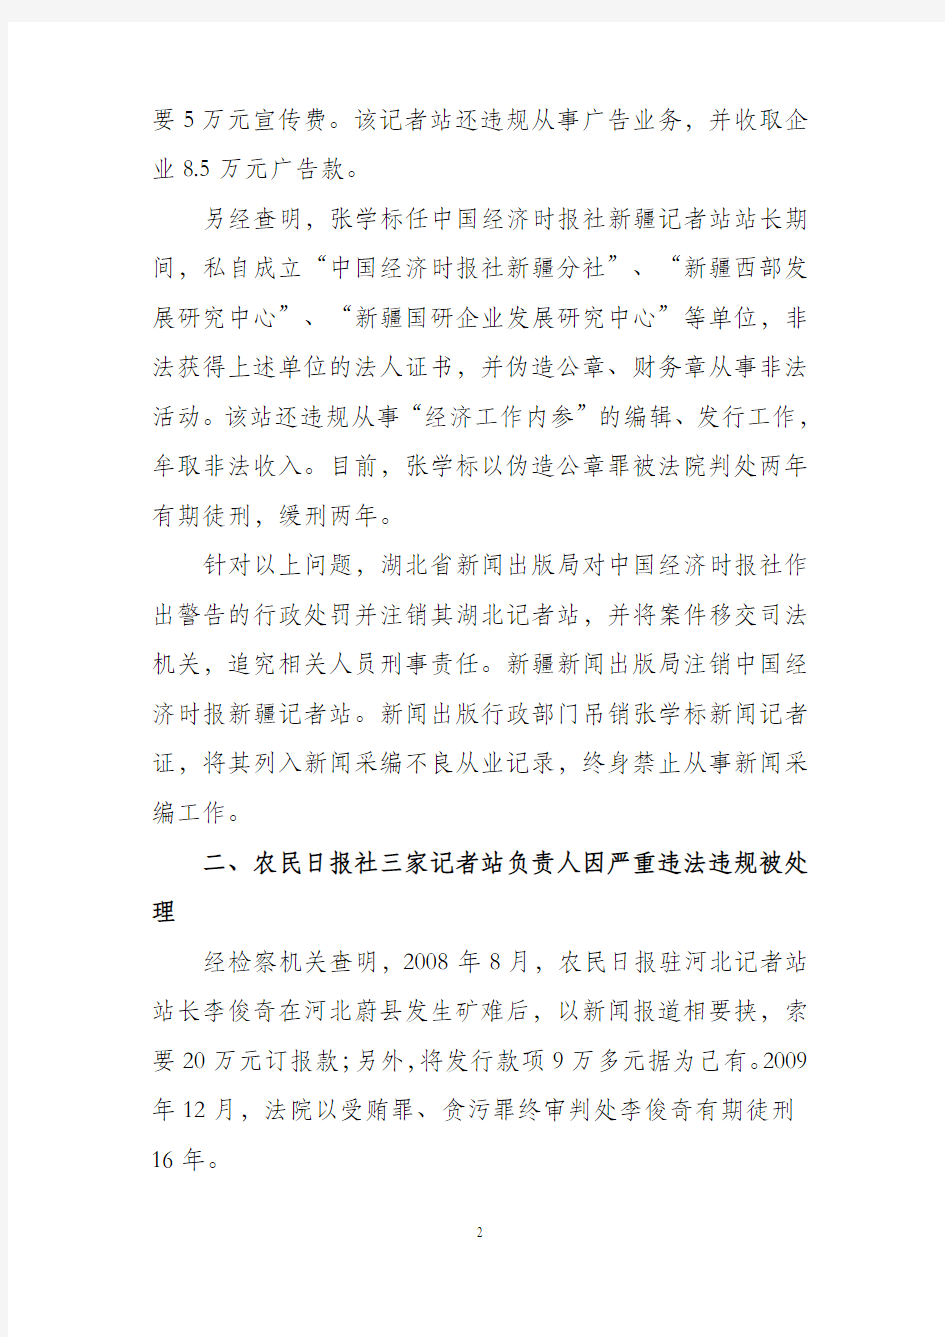 新闻出版总署办公厅 新出厅字〔2010〕429号关于中国经济时报等报刊记者站违规情况的通报